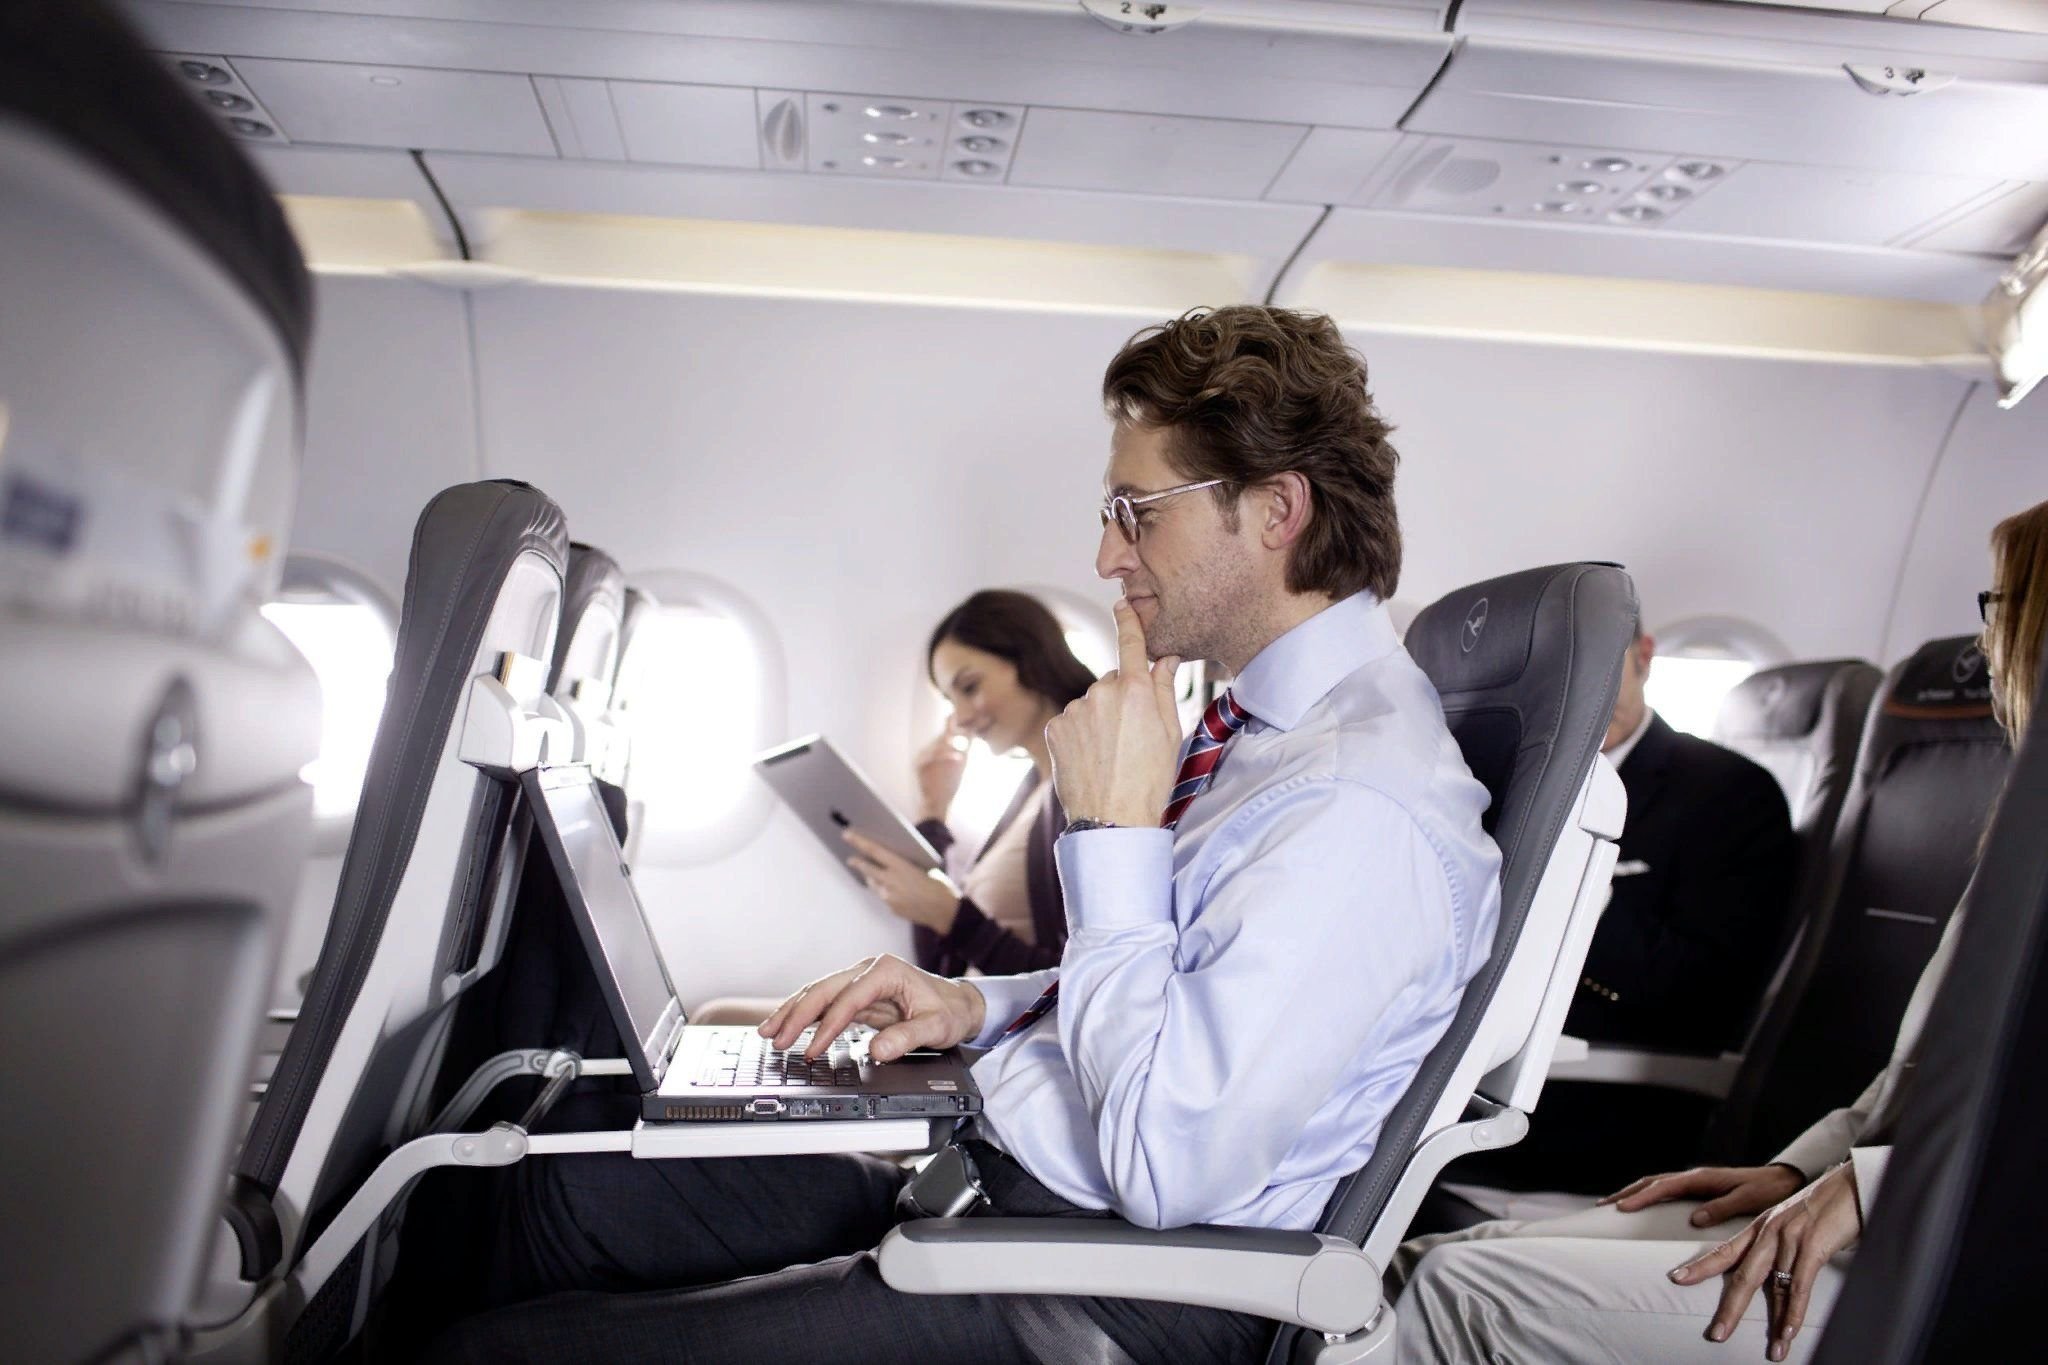 Первый человек на самолете. Люди в самолете. Ноутбук в самолете. Самолет с пассажиром. Салон самолета.